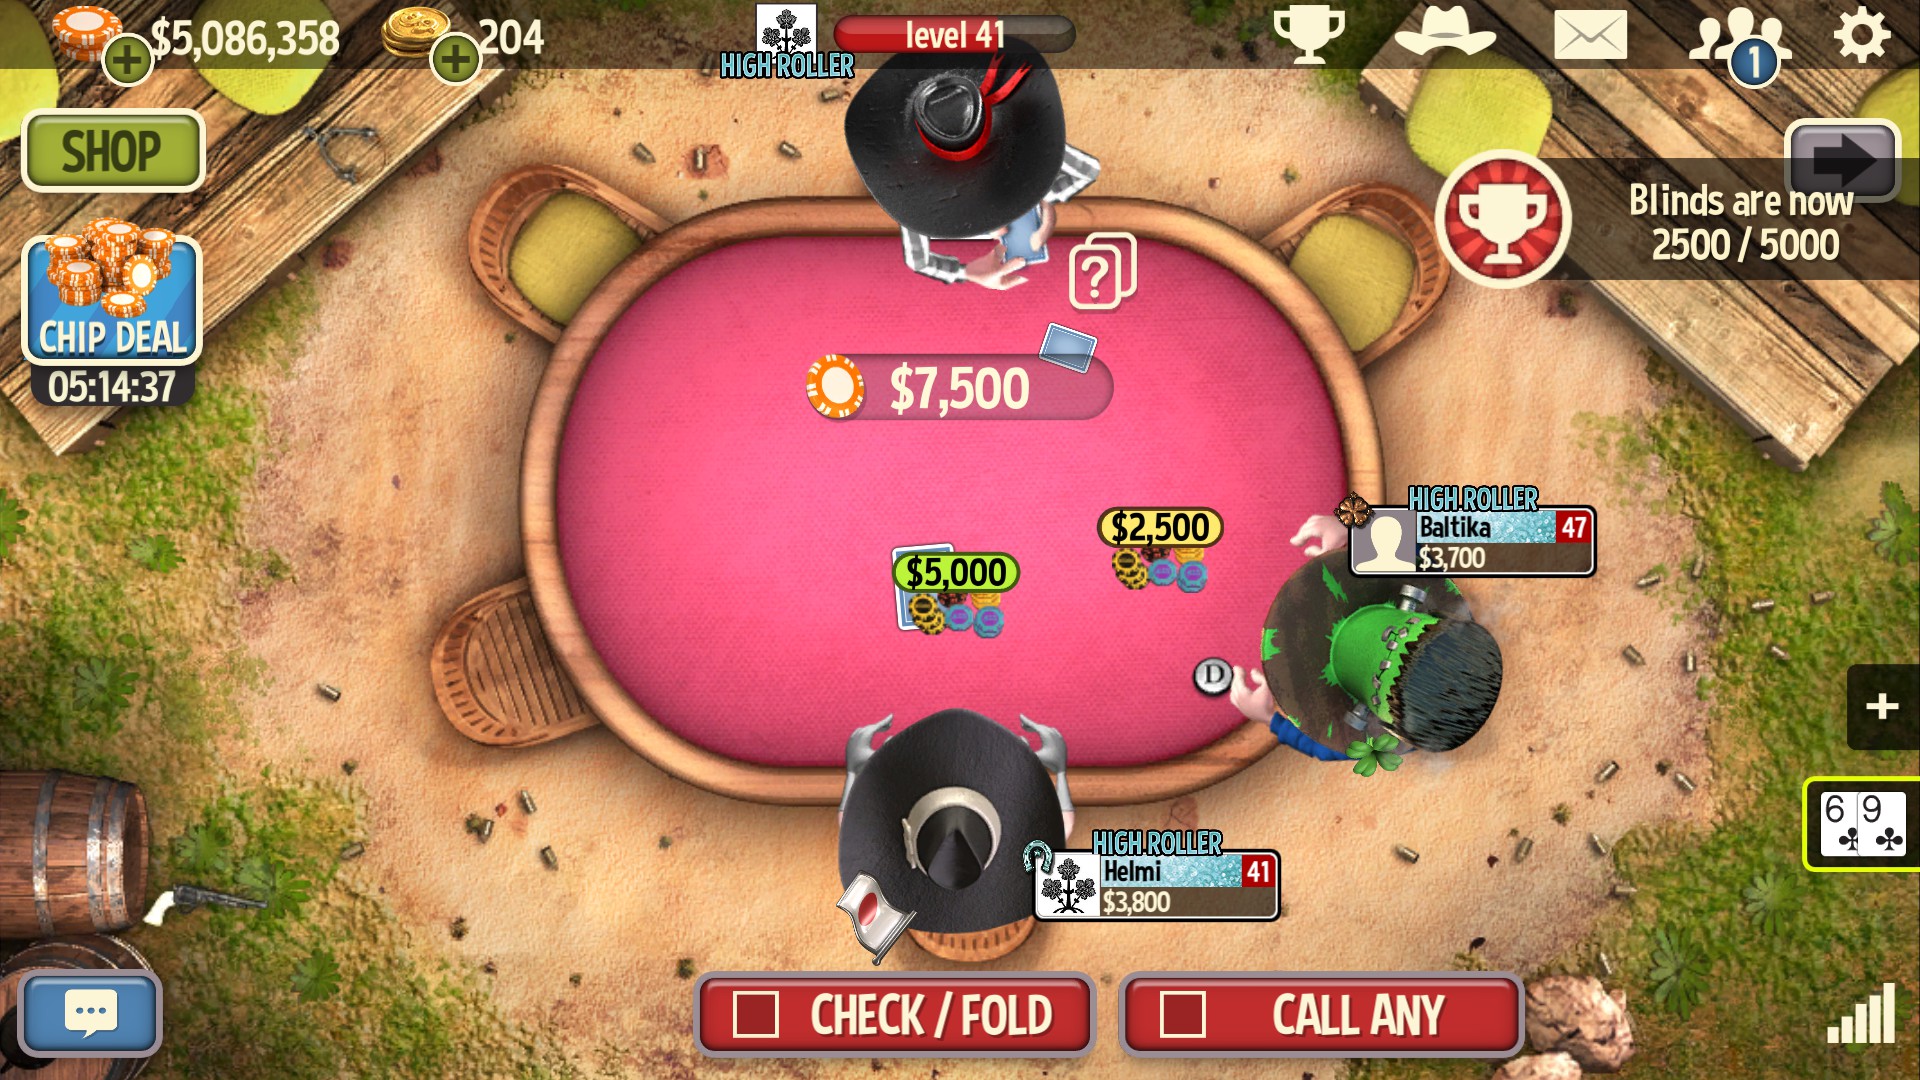 online games poker governor 2